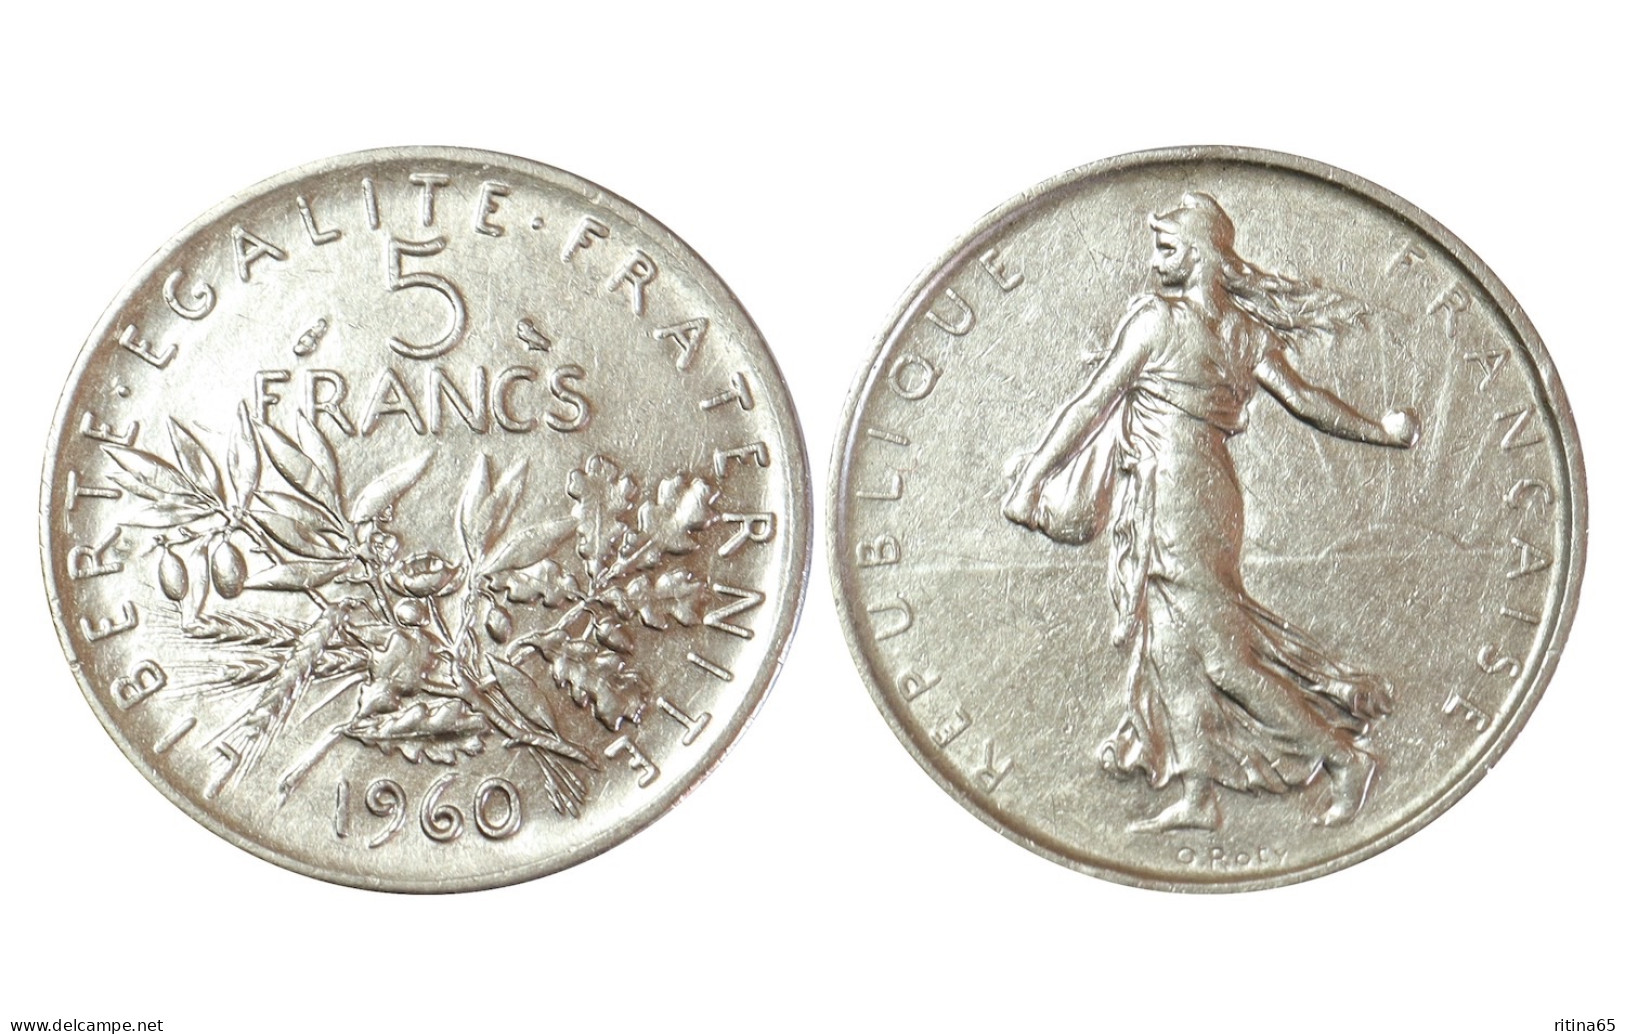 FRANCIA 5 FRANCS 1960 IN ARGENTO KM# 926 - 5 Francs